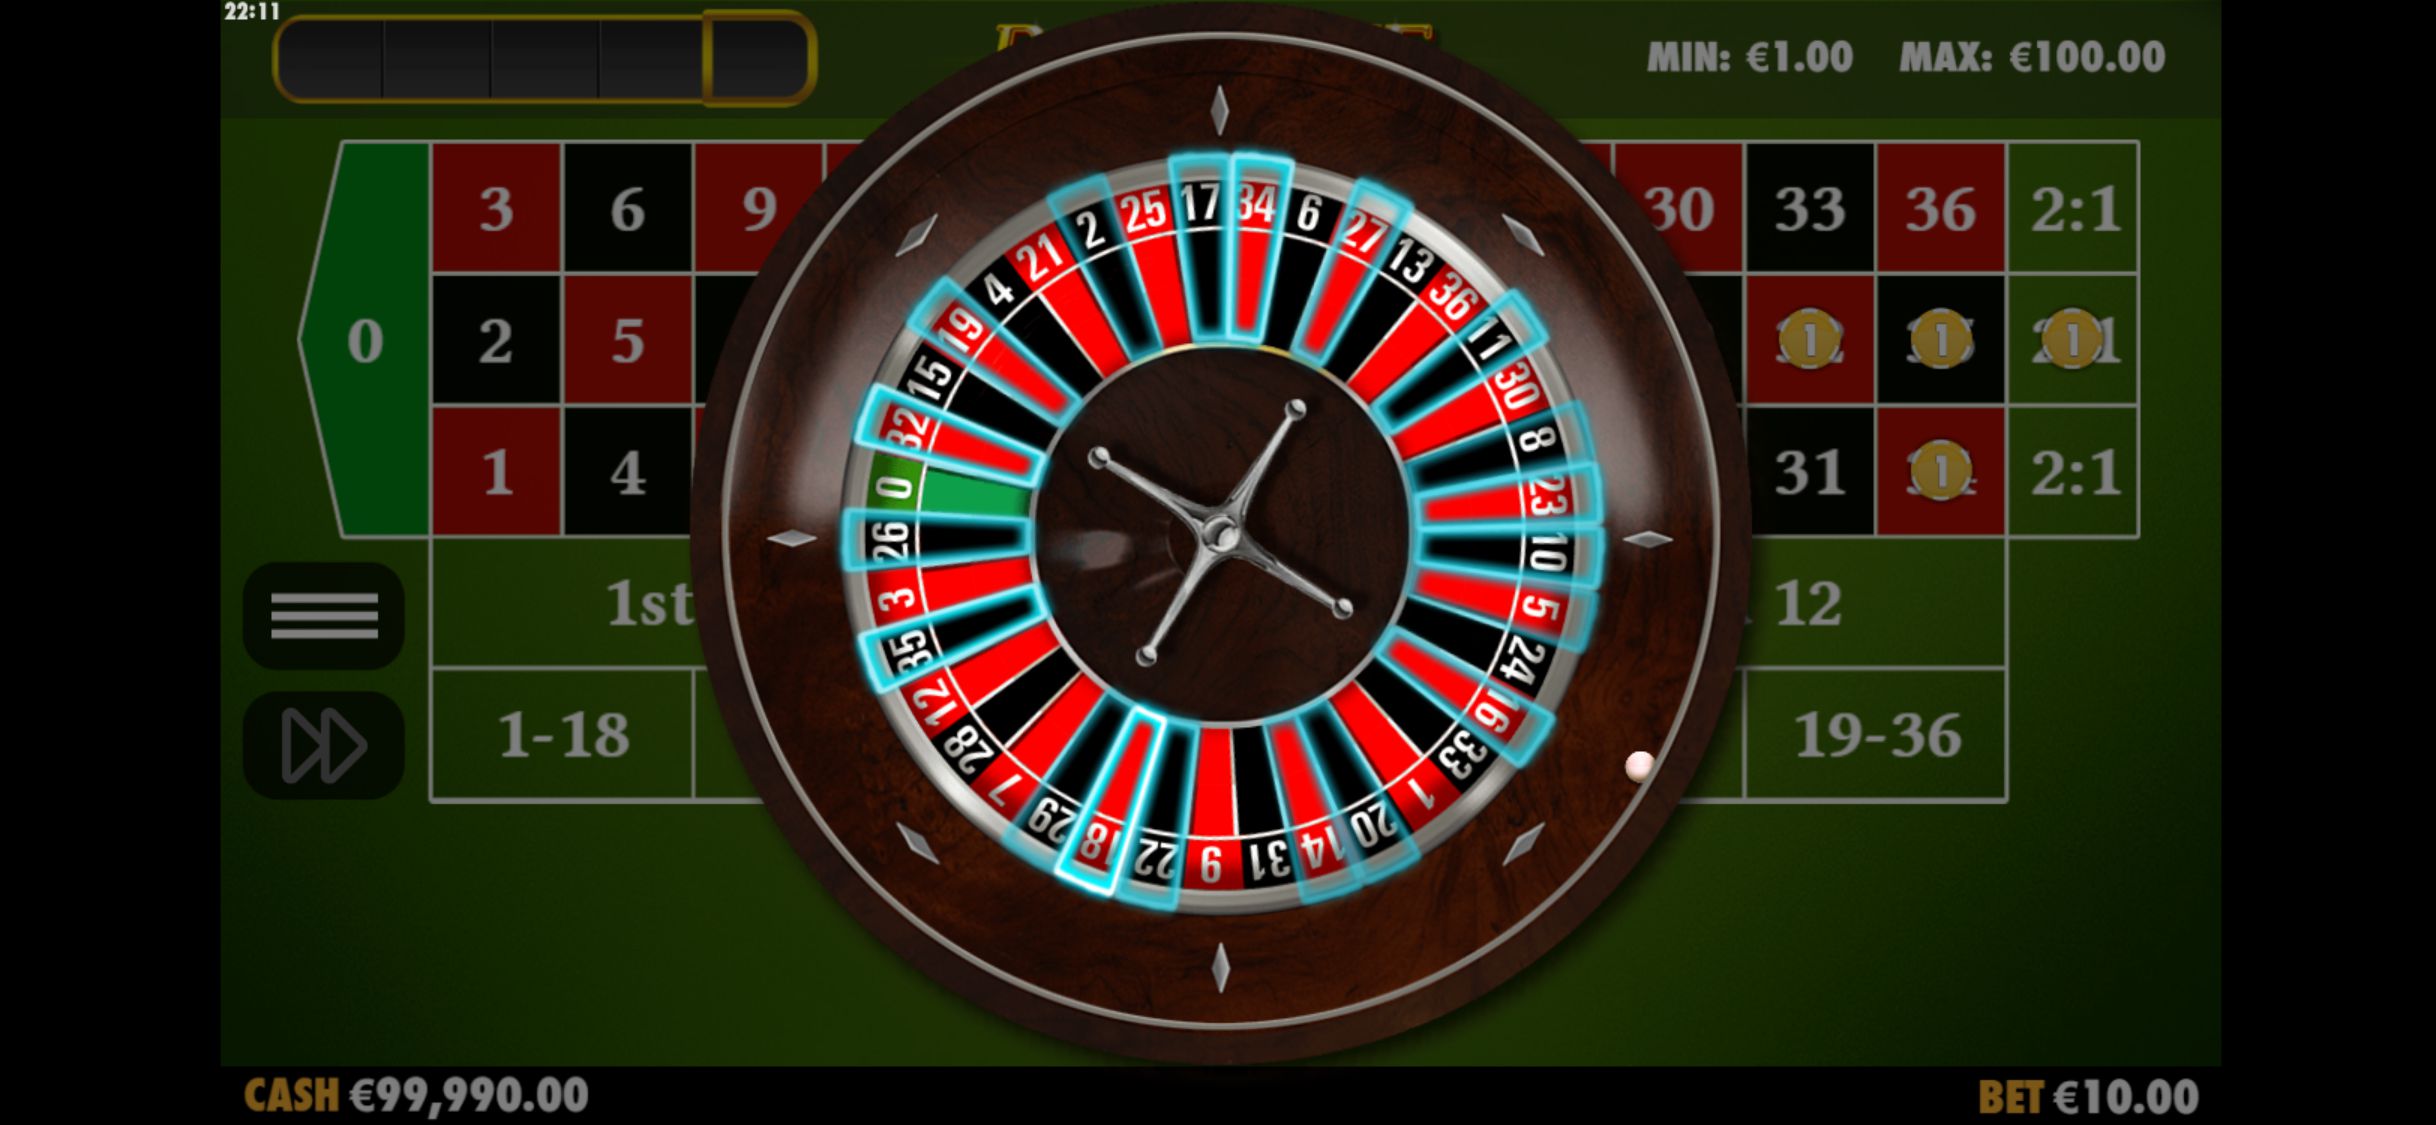 188 Bet Casino Mobile Casino Games Review